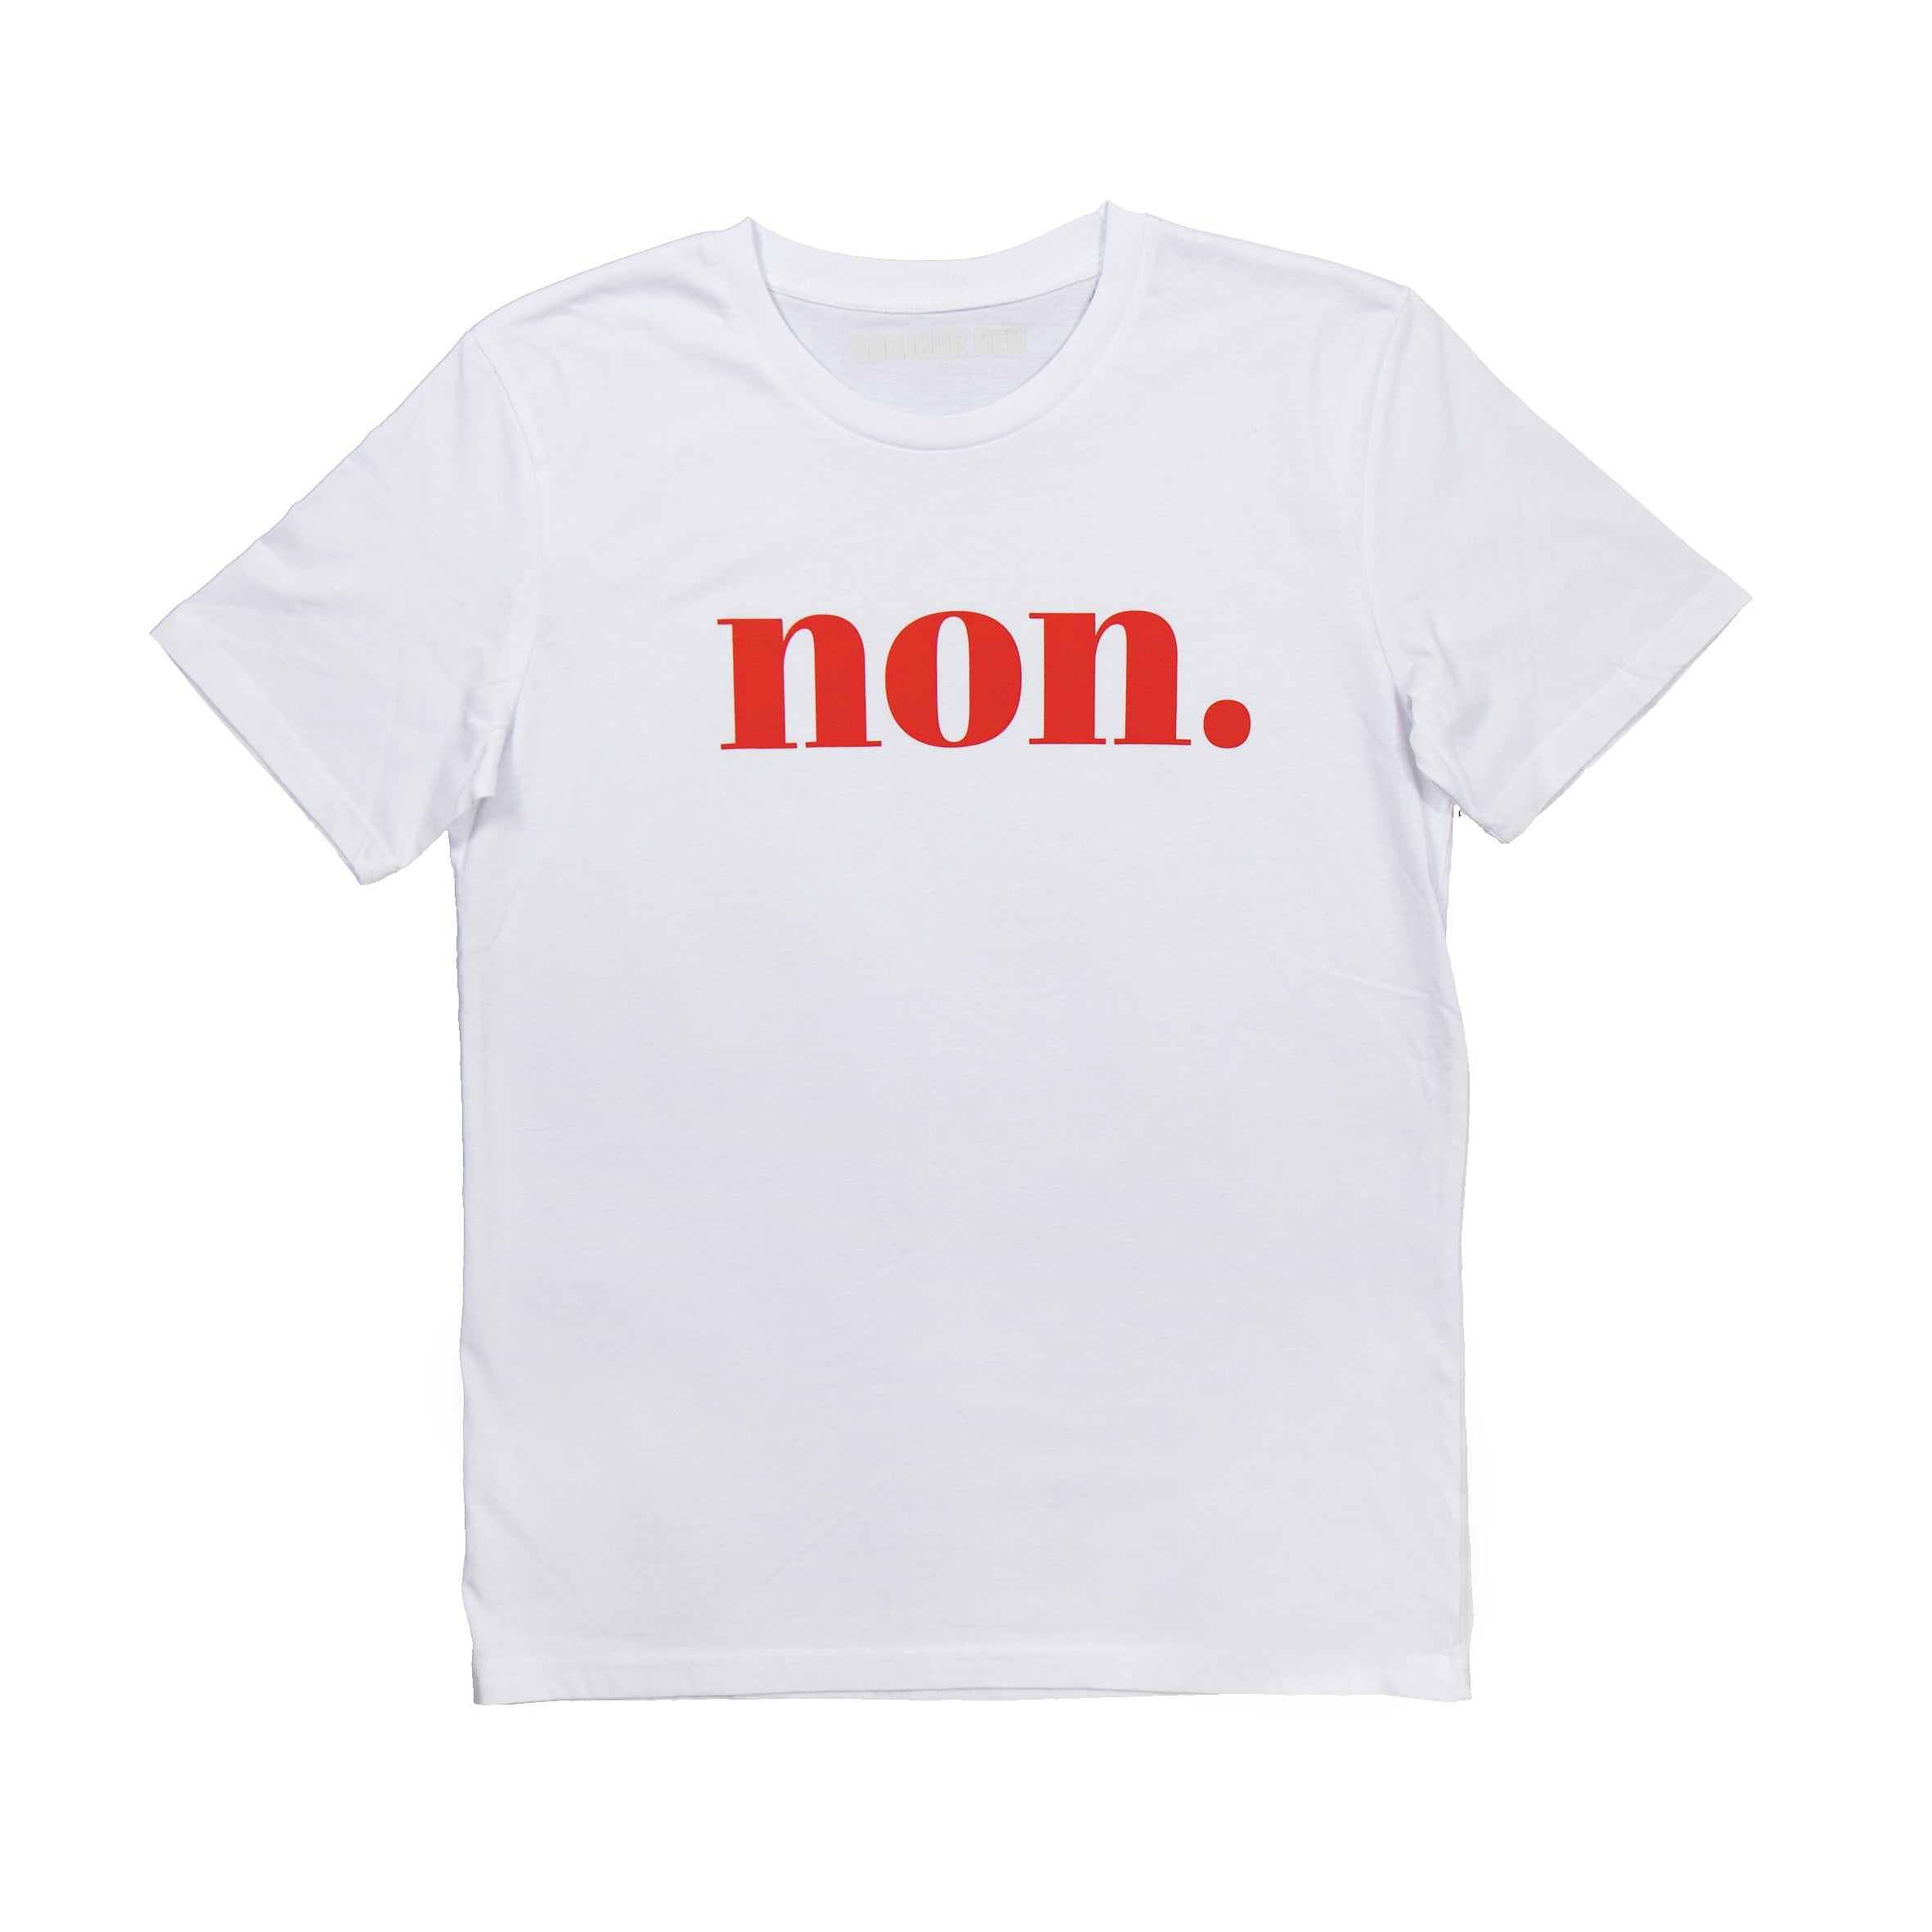 Ben - T-Shirt Bonjour – Weiß/Rot Non.